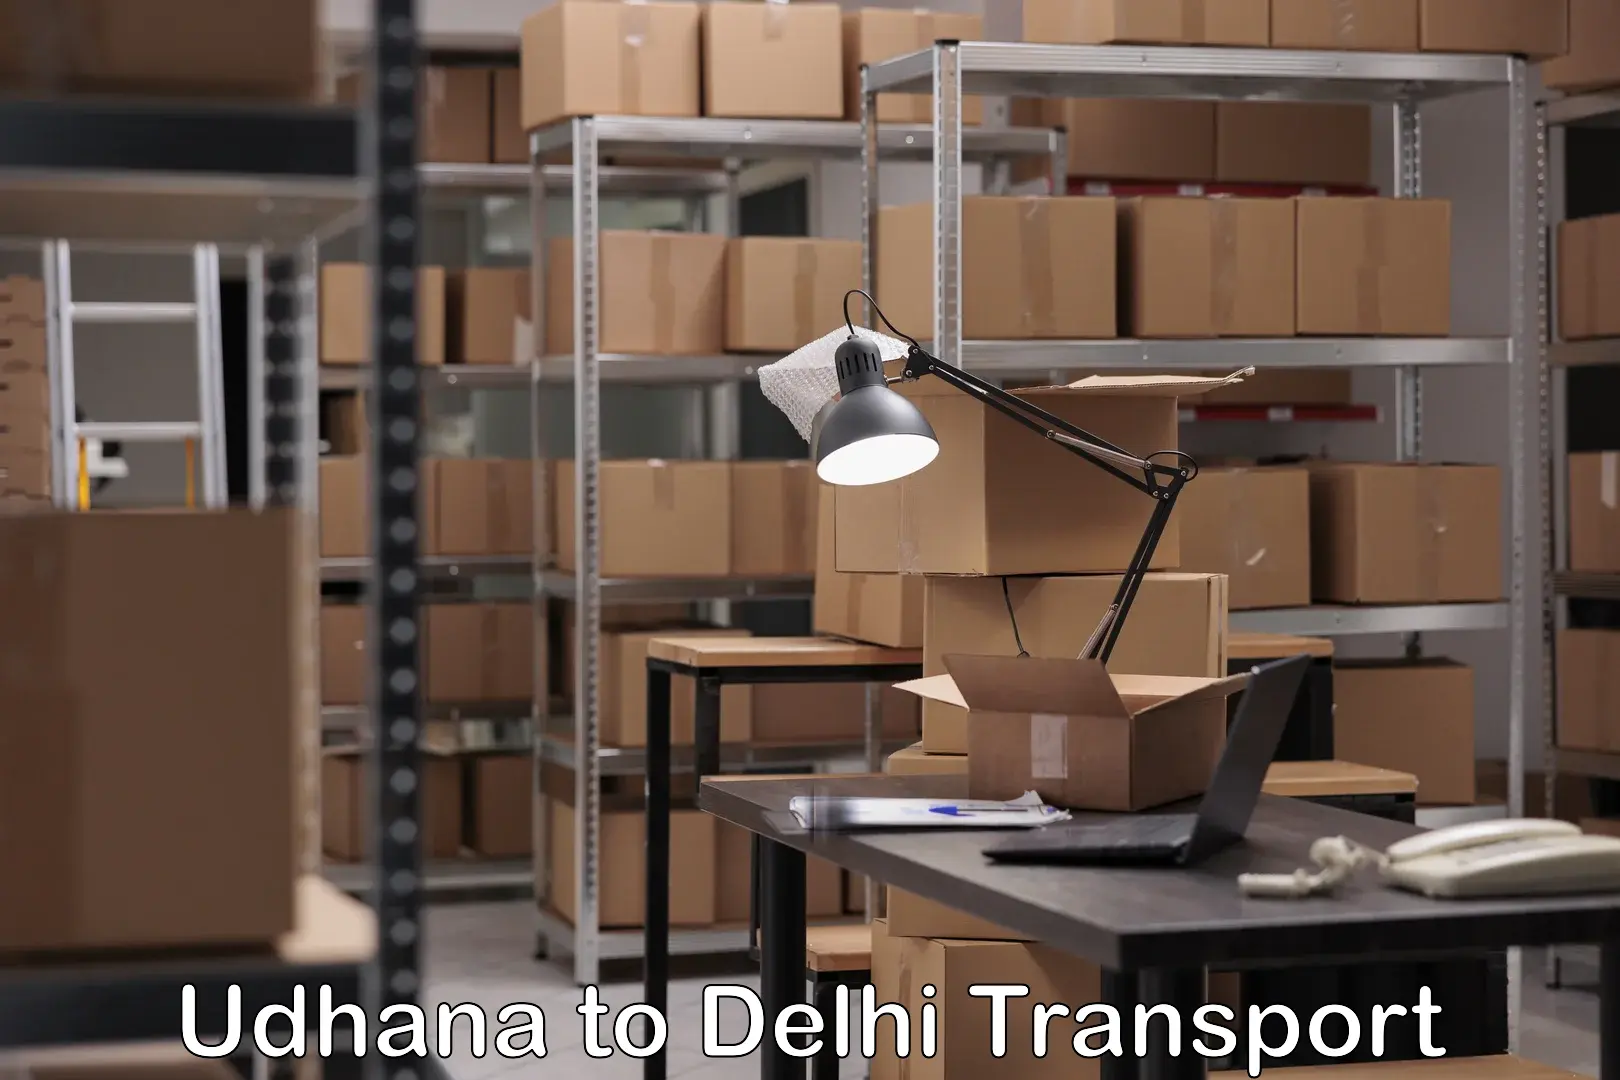 Online transport service Udhana to Delhi